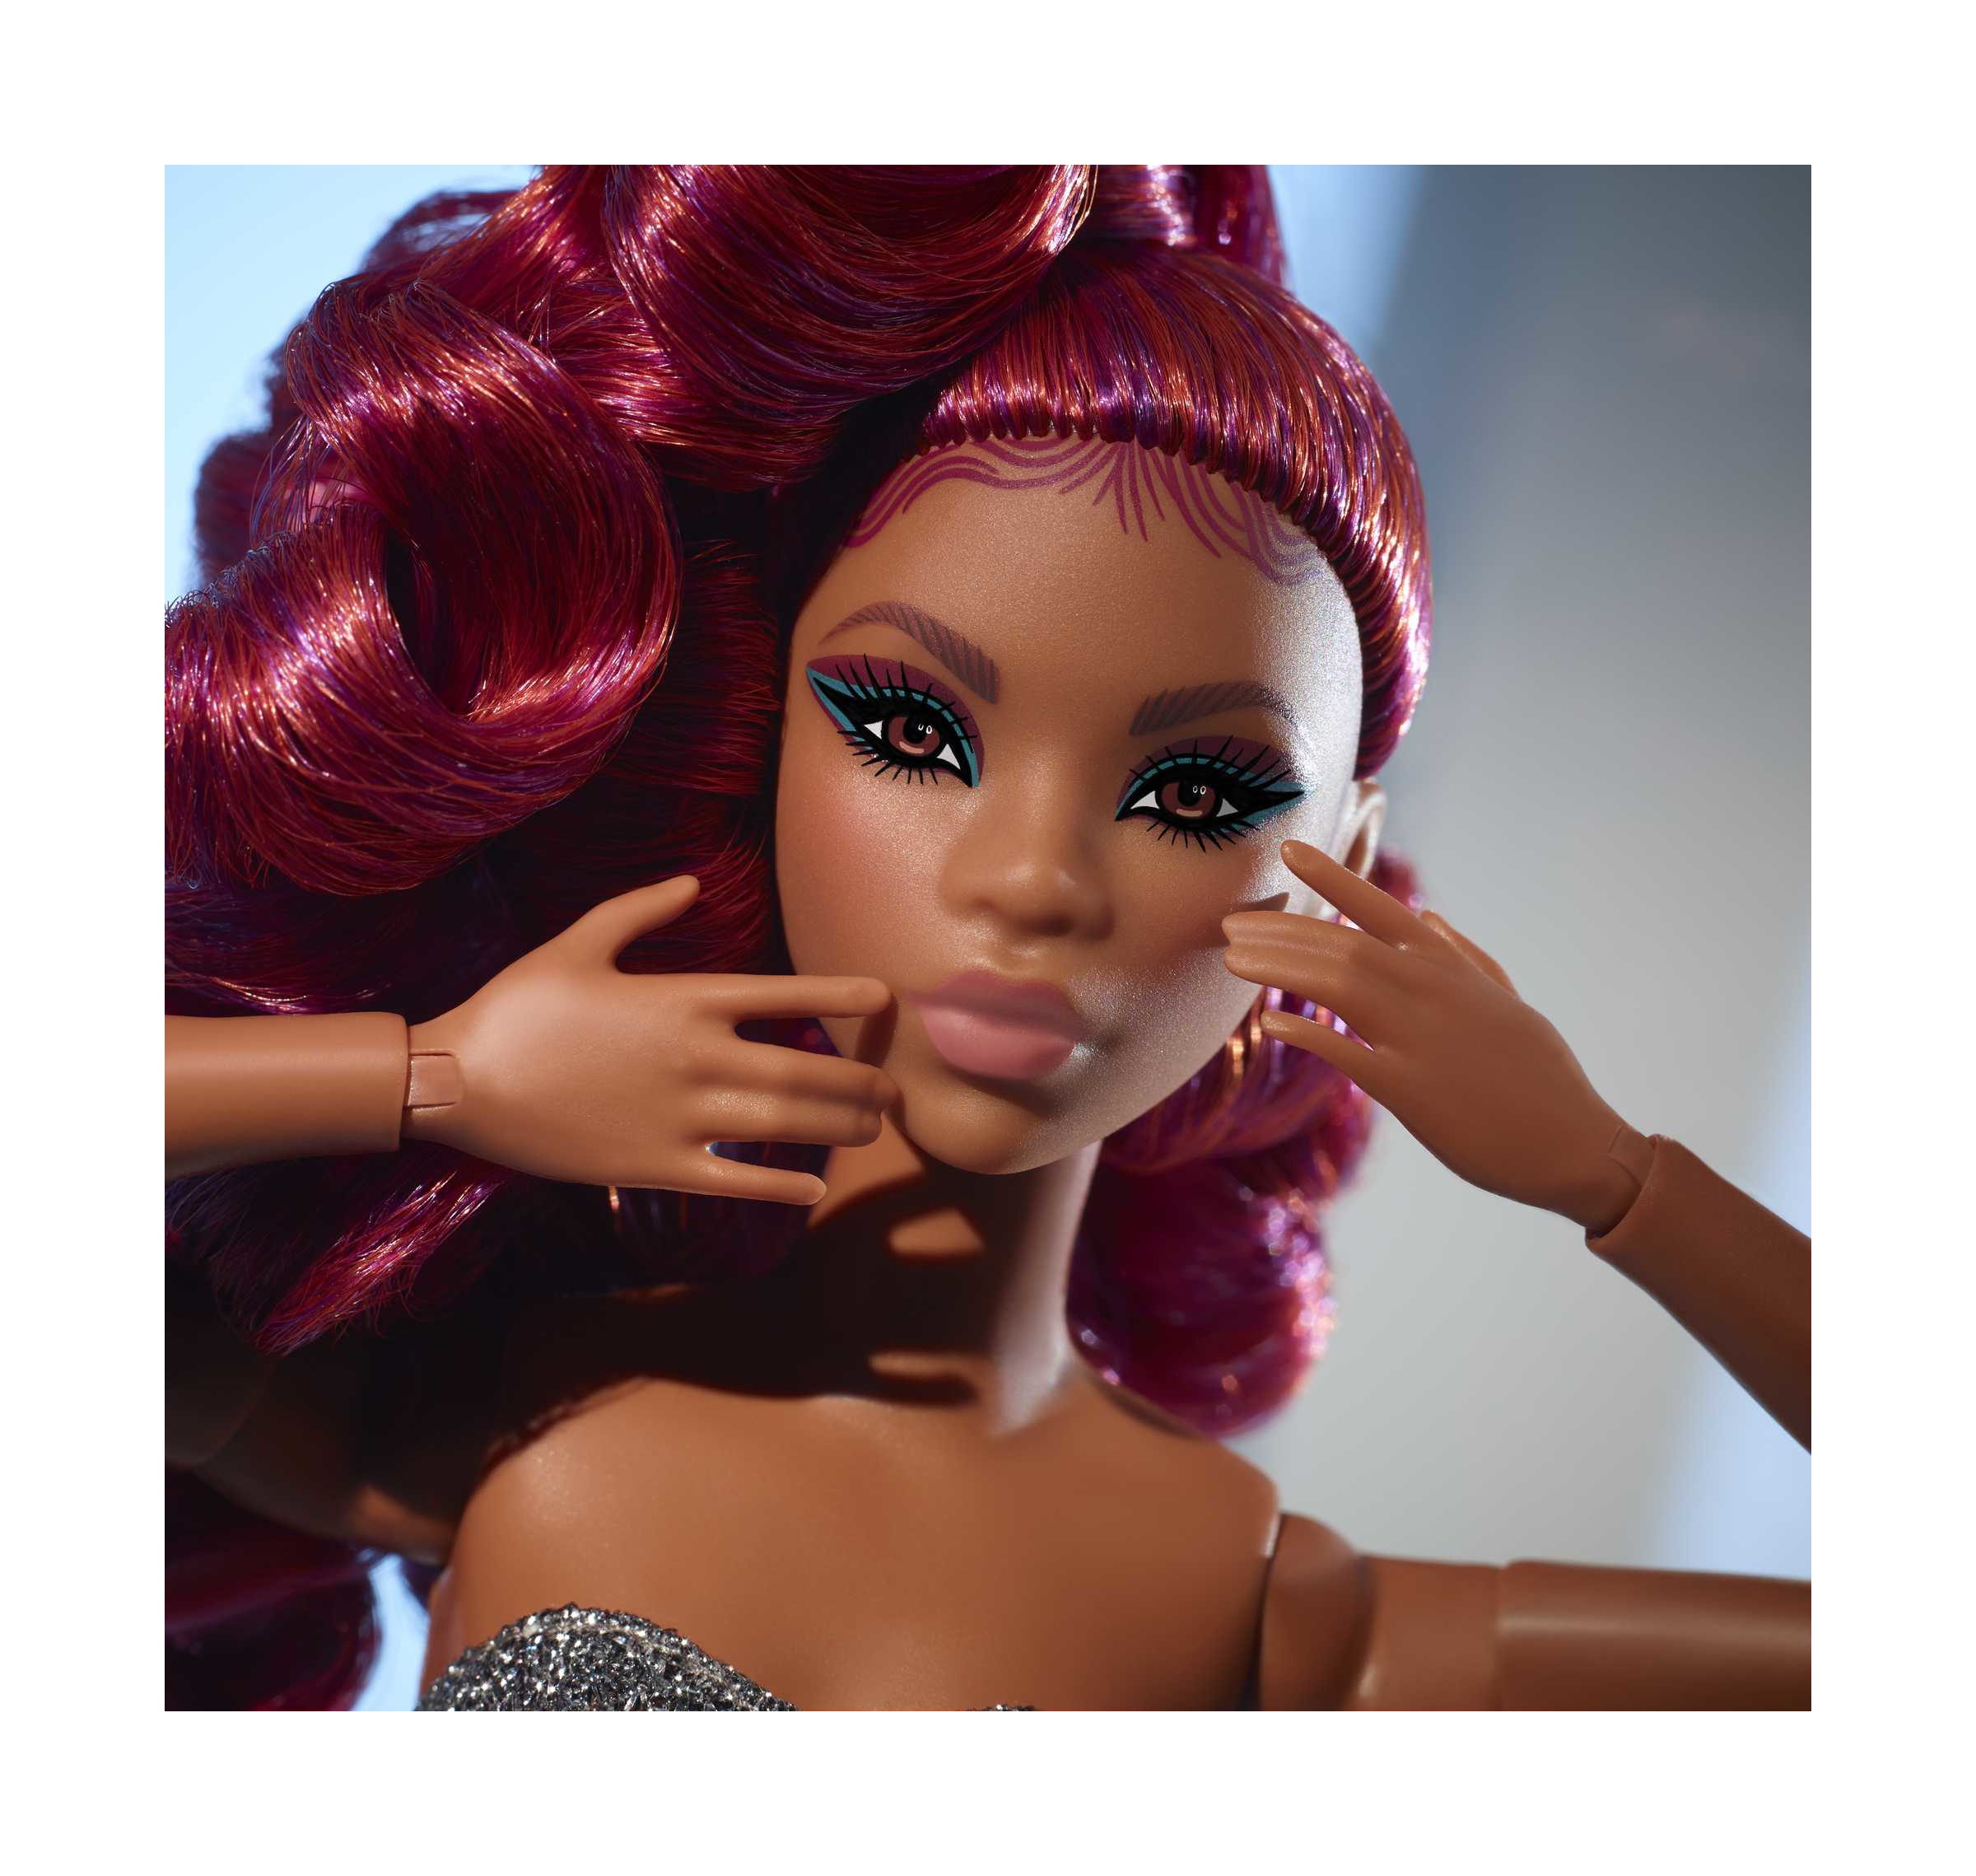 Barbie, bambola signature barbie looks bionda, snodata, con crop top, gonna tubino argenta e capelli corti biondi, giocattolo per bambini 6+ anni, hcb77 - Barbie